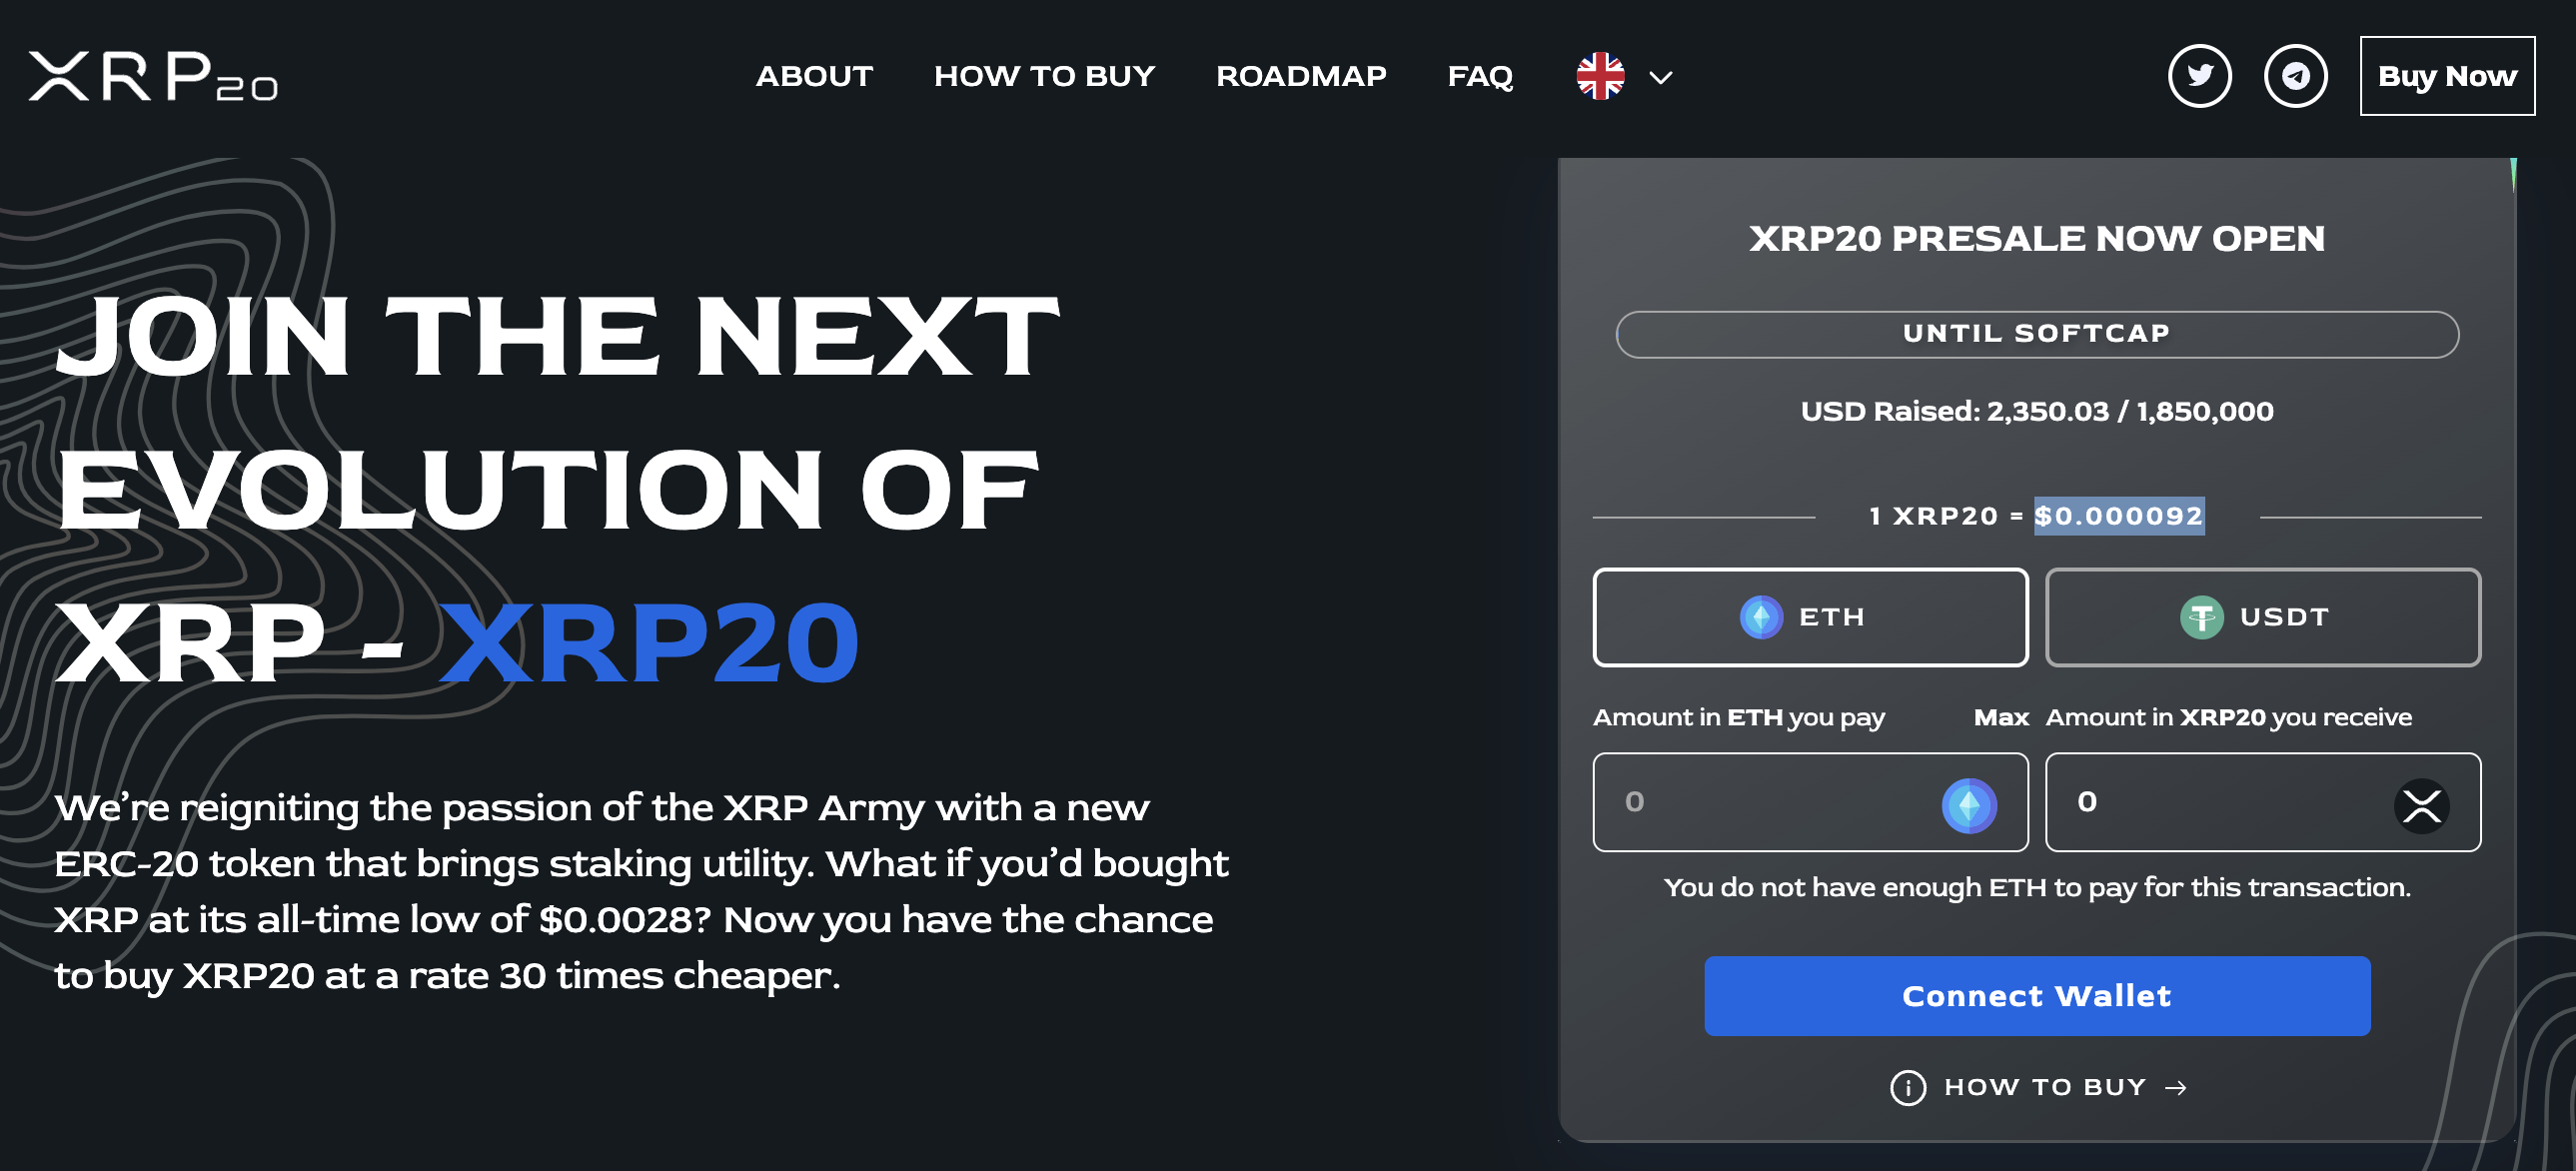 XRP20 ist ein neuer Krypto-Launch, den man im Auge behalten sollte. Wird dieser Stake to Earn Coin um 22.700% explodieren wie der XRP-Preis?